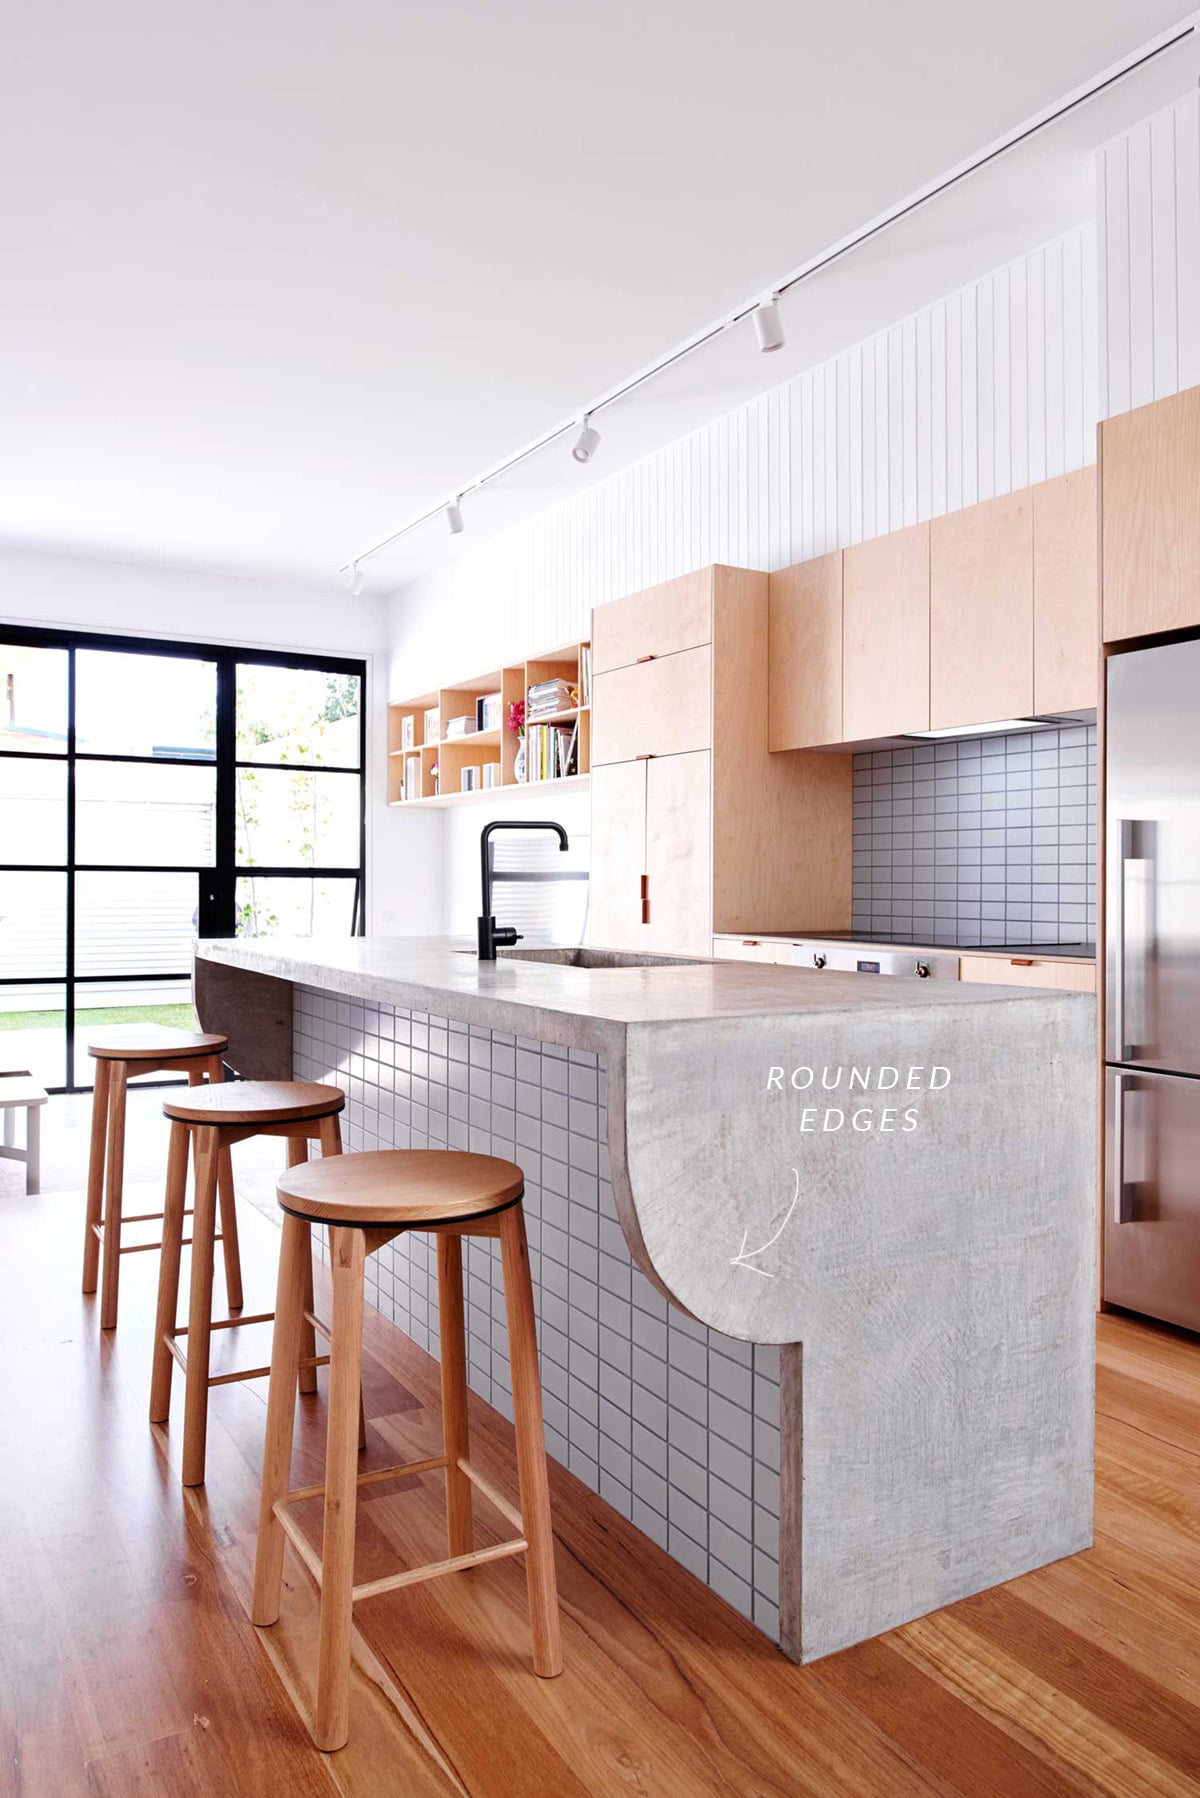 a modern kitchen renovation with cool concrete detail | via coco kelley